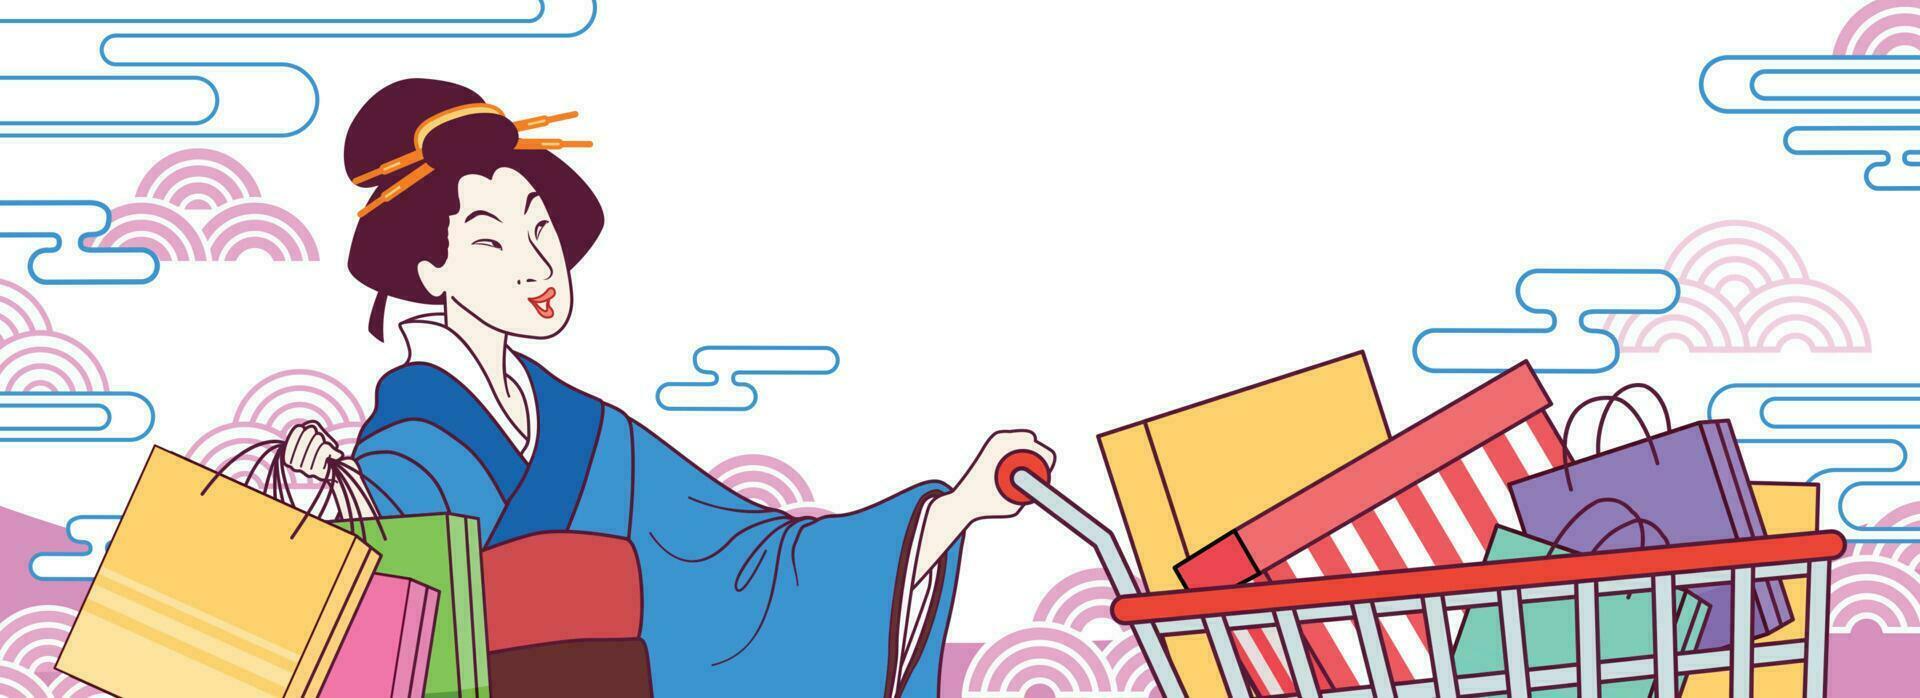 ukiyo-e blauw kimono vrouw voortvarend boodschappen doen kar vol van geschenk dozen en producten, Japan boodschappen doen festival banier met copyspace vector